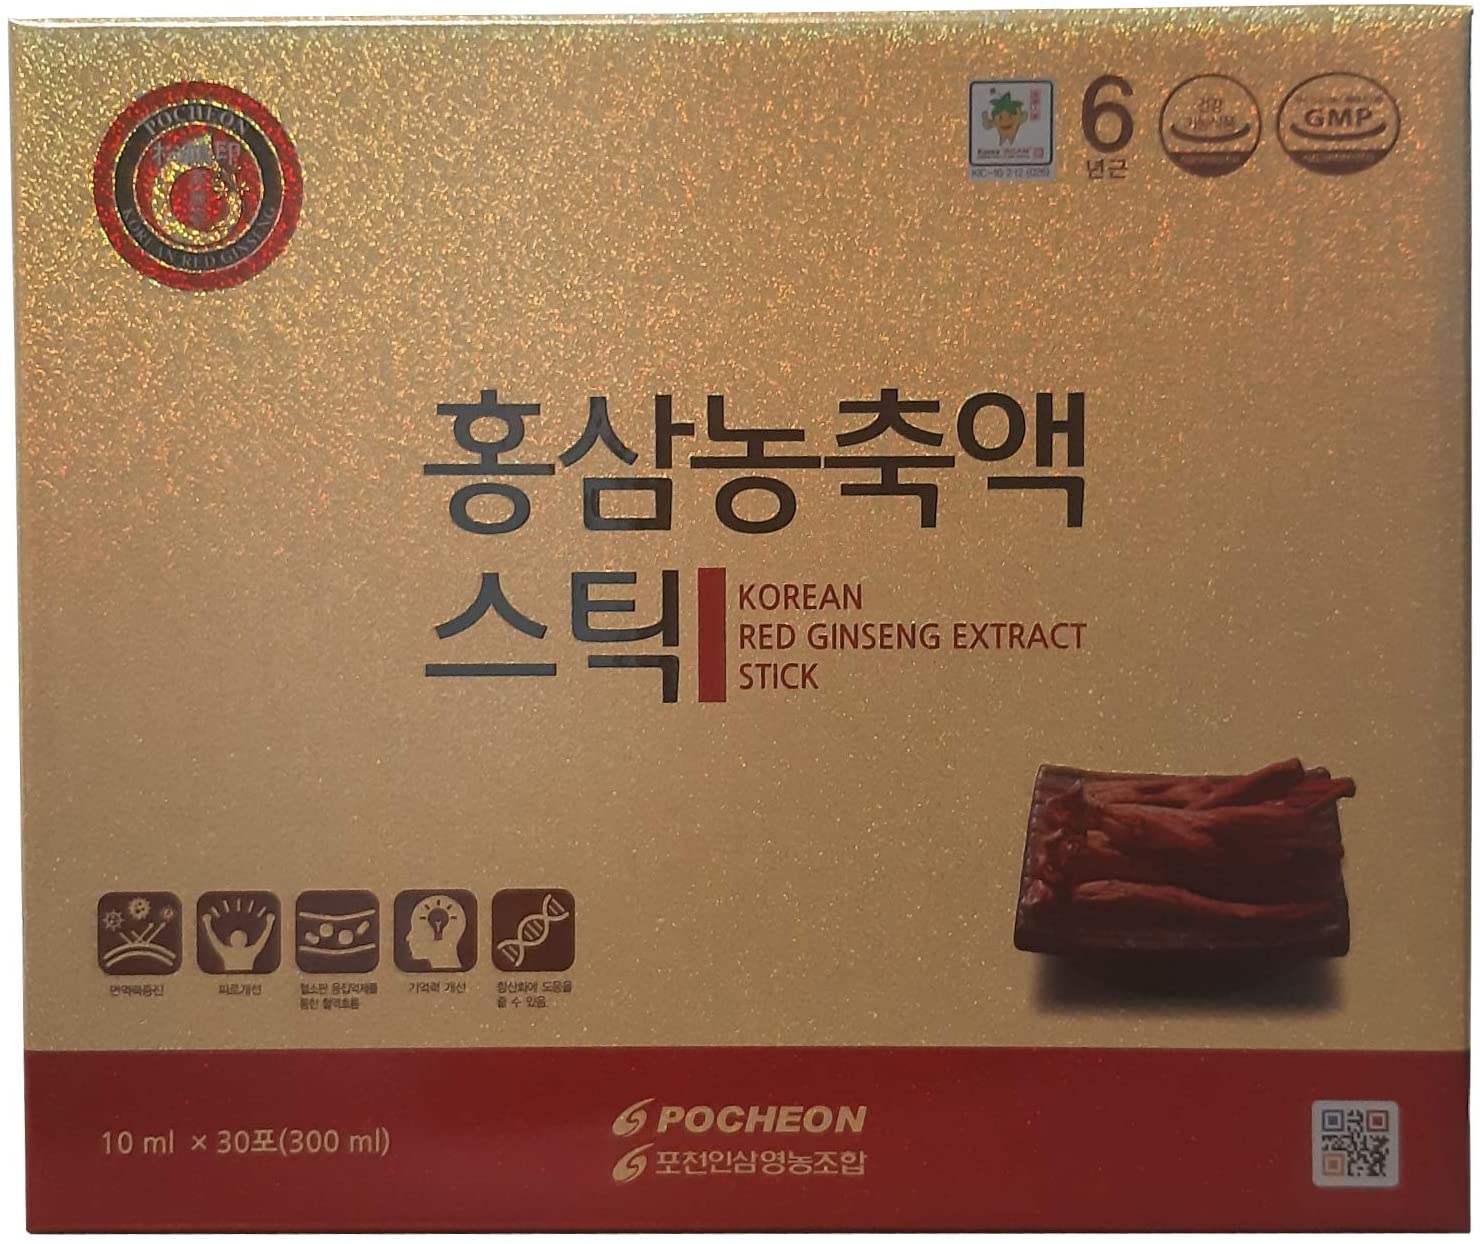 Mặt trước bao bì vỏ hộp hồng sâm Pocheon được in nền chủ đạo giấy ánh vàng rất sang trọng.